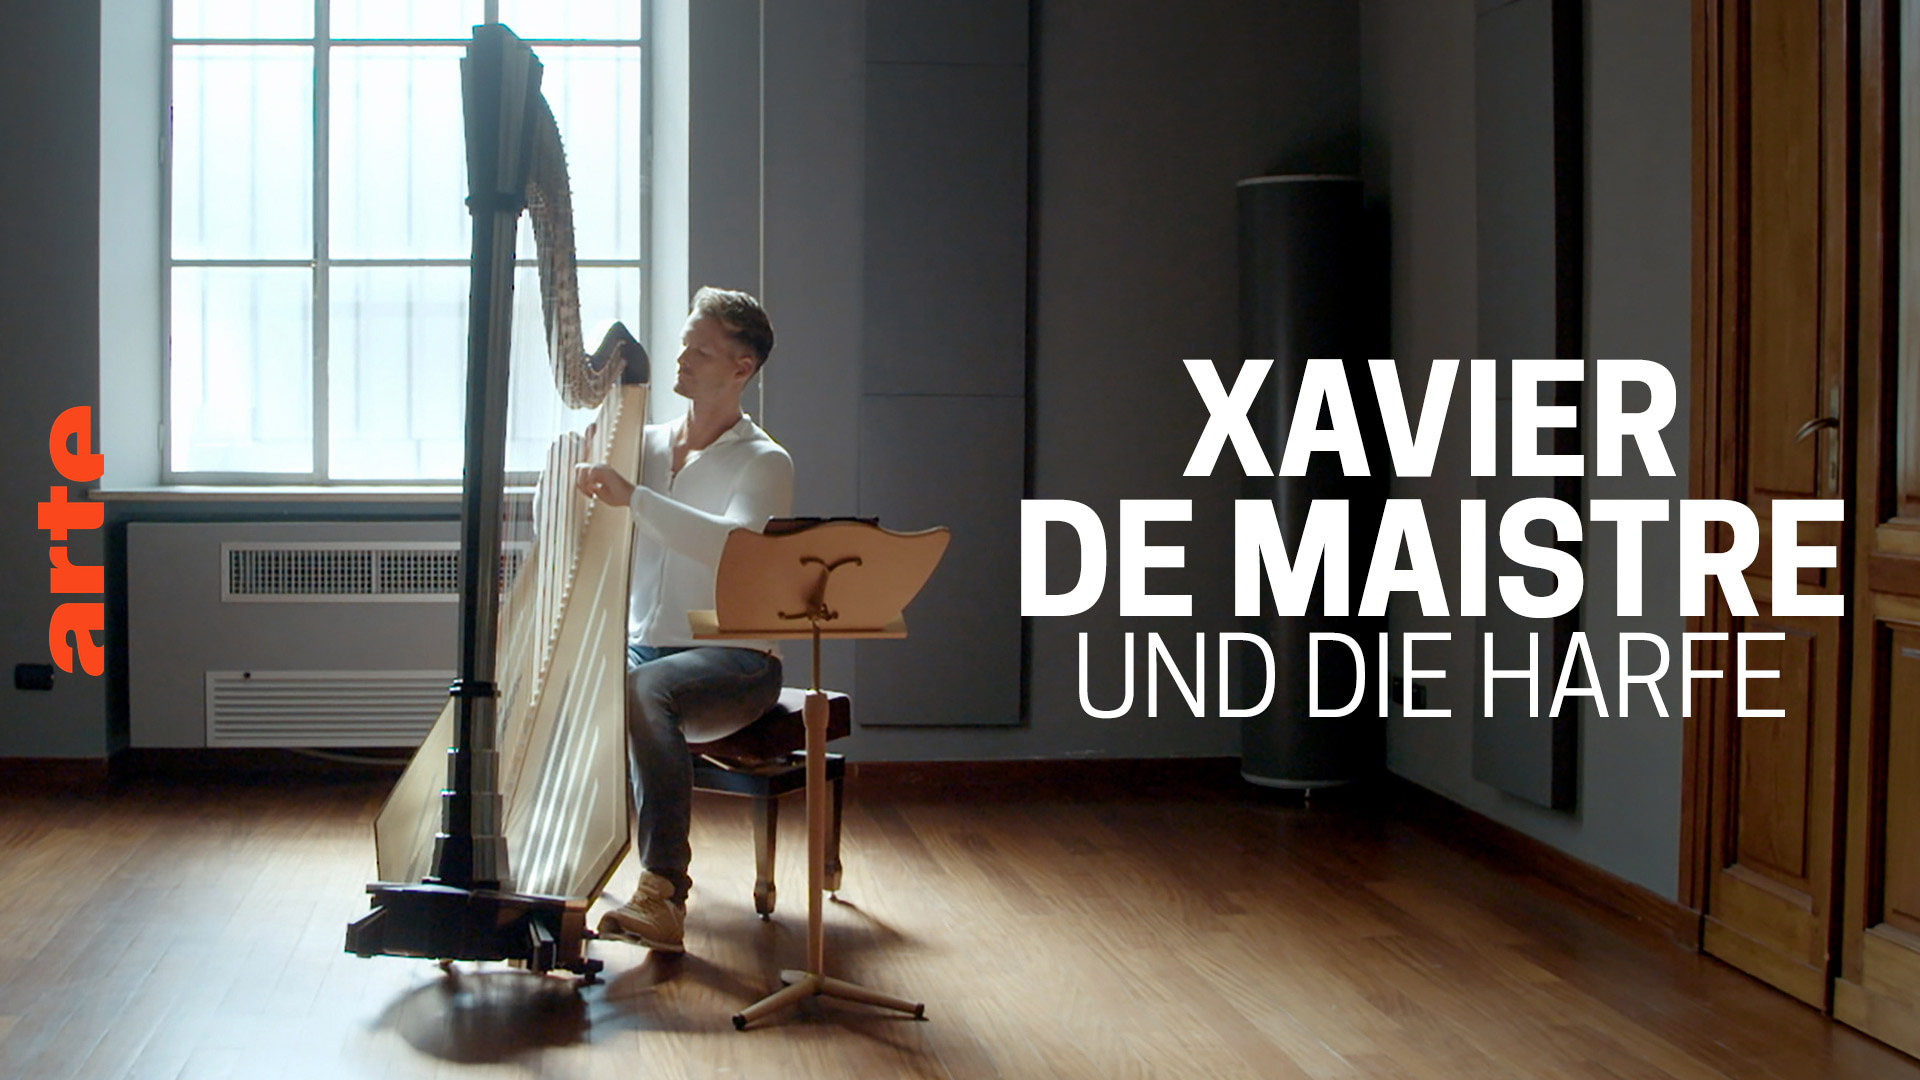 Xavier de Maistre und die Harfe